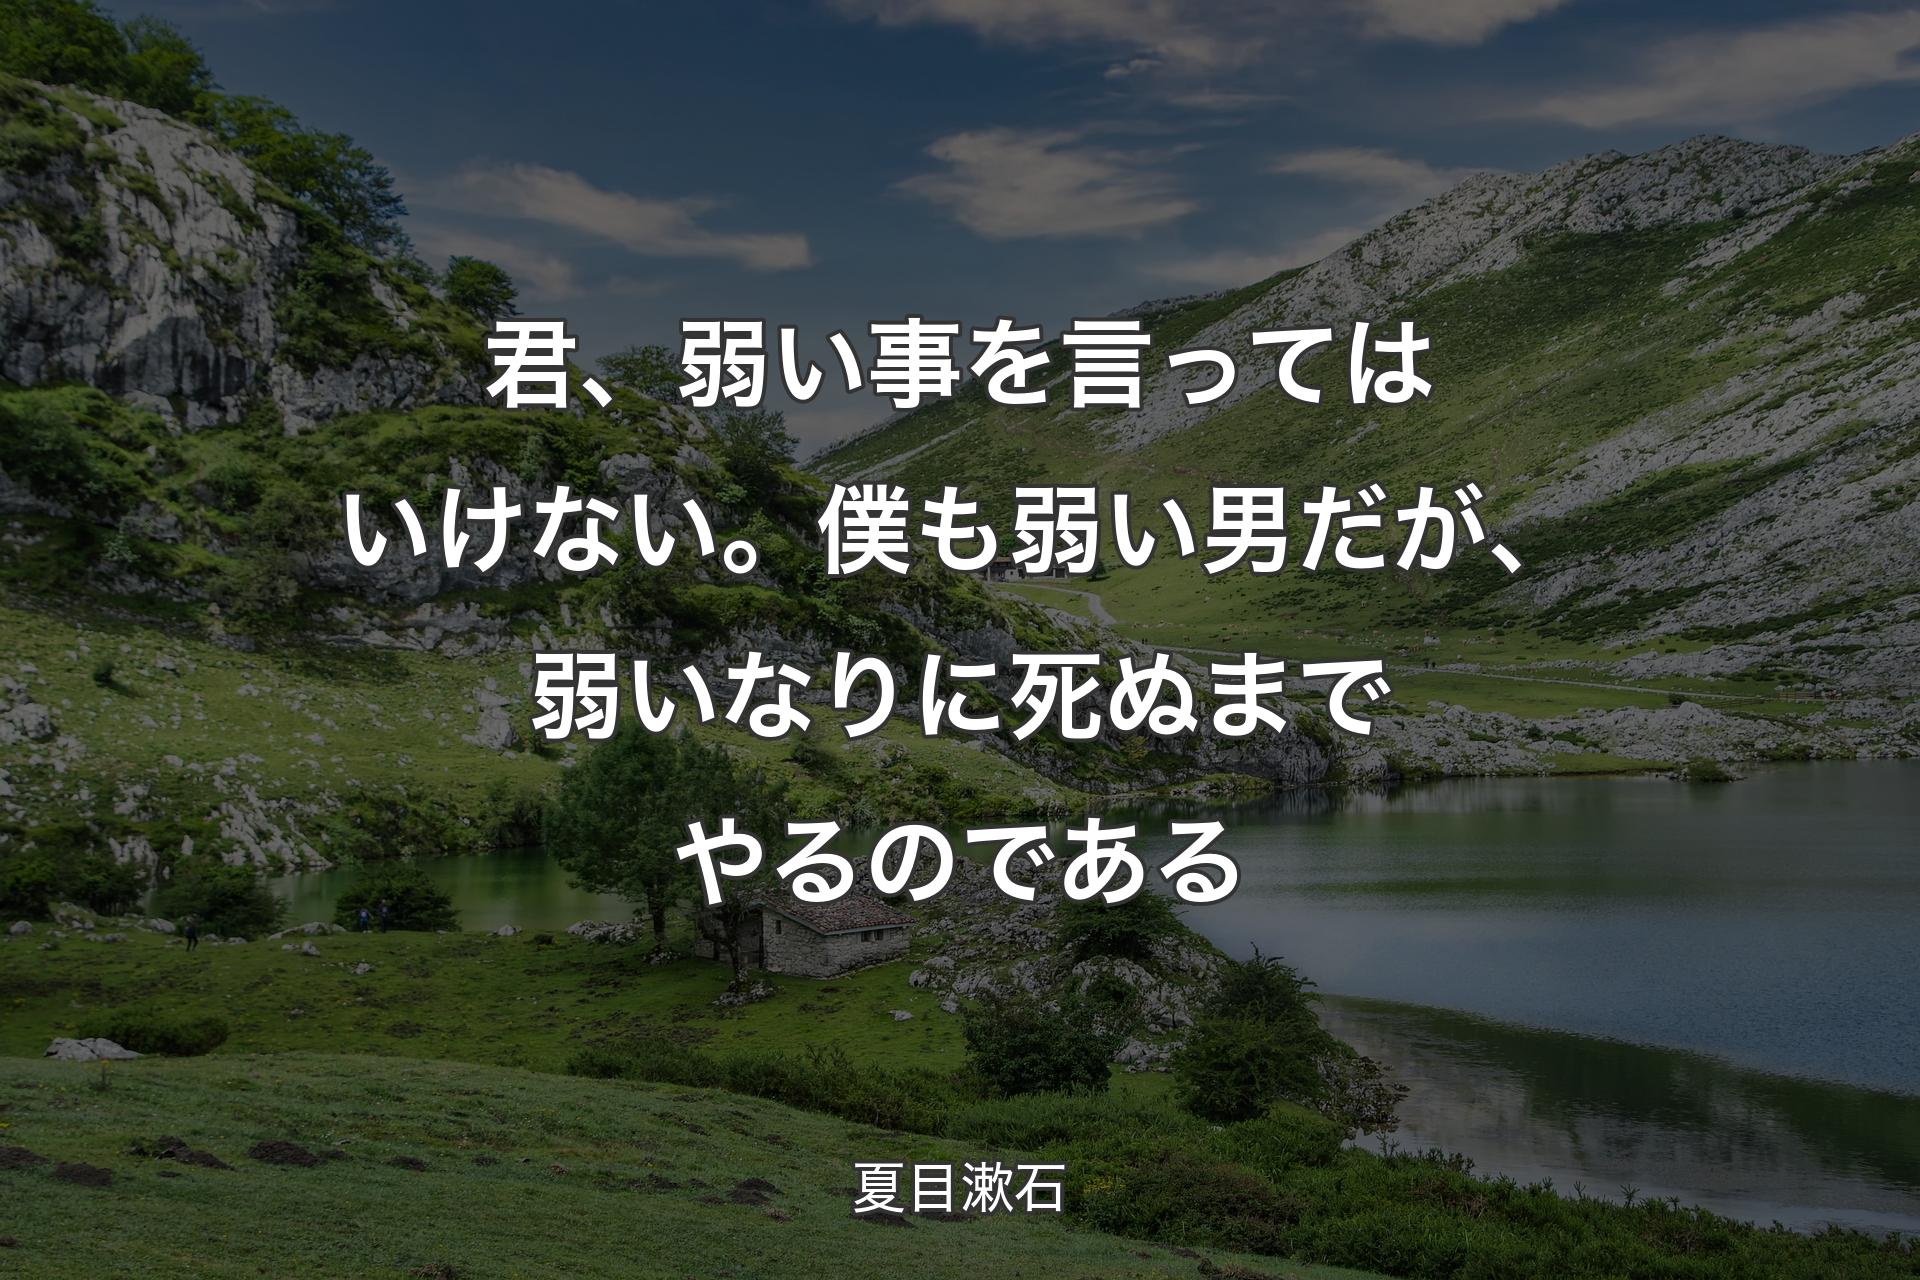 【背景1】君、弱い事を言ってはいけない。僕も弱い男だが、弱いなりに死ぬまでやるのである - 夏目漱石